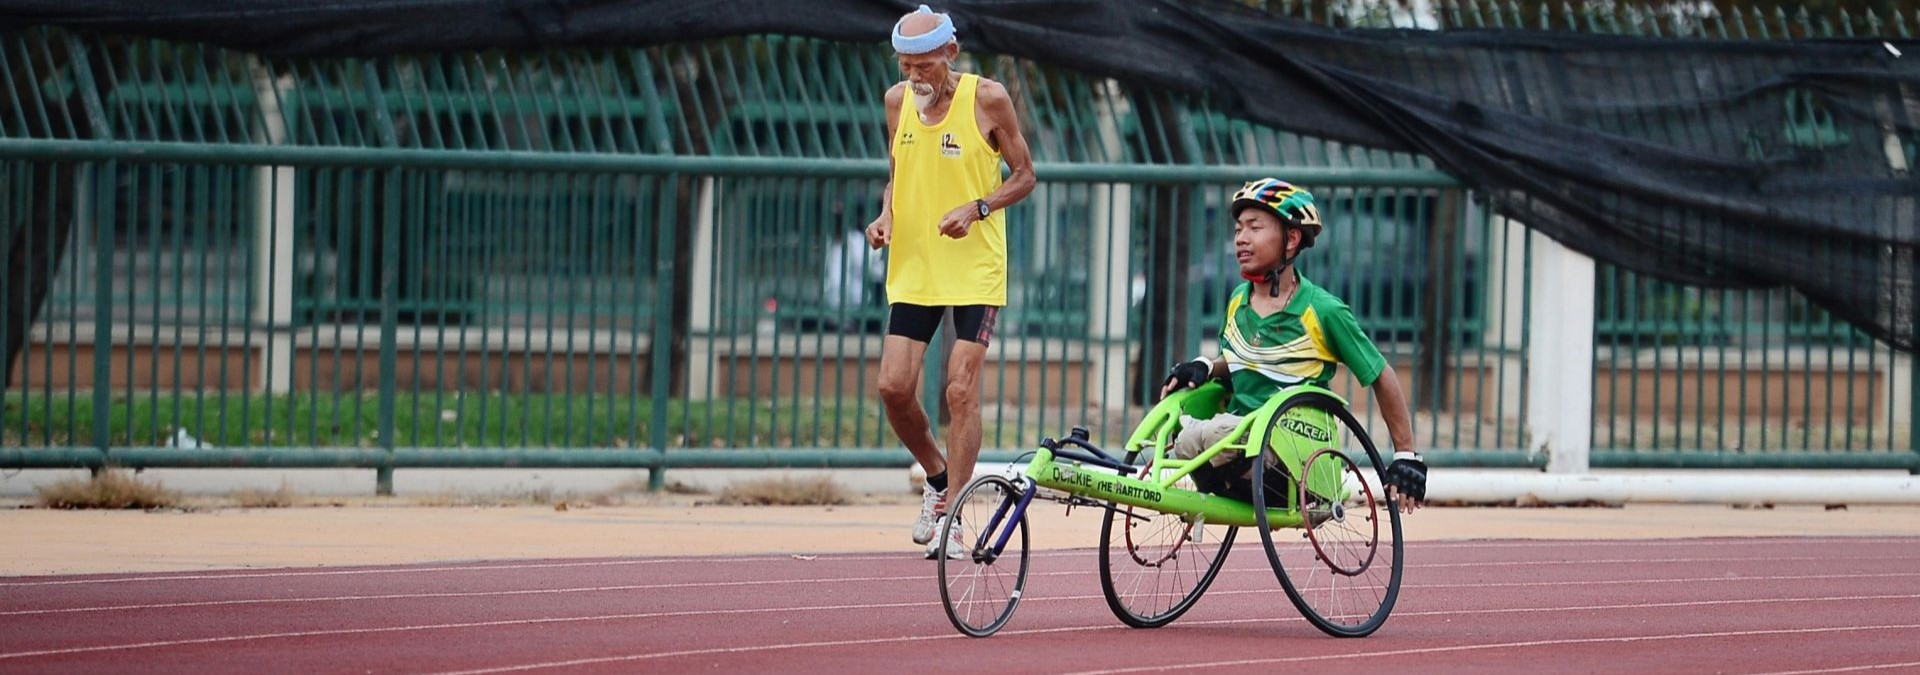 Ein junge im Rollstuhl und ein älterer Mann treiben zusammen auf einer Sprintstrecke sport